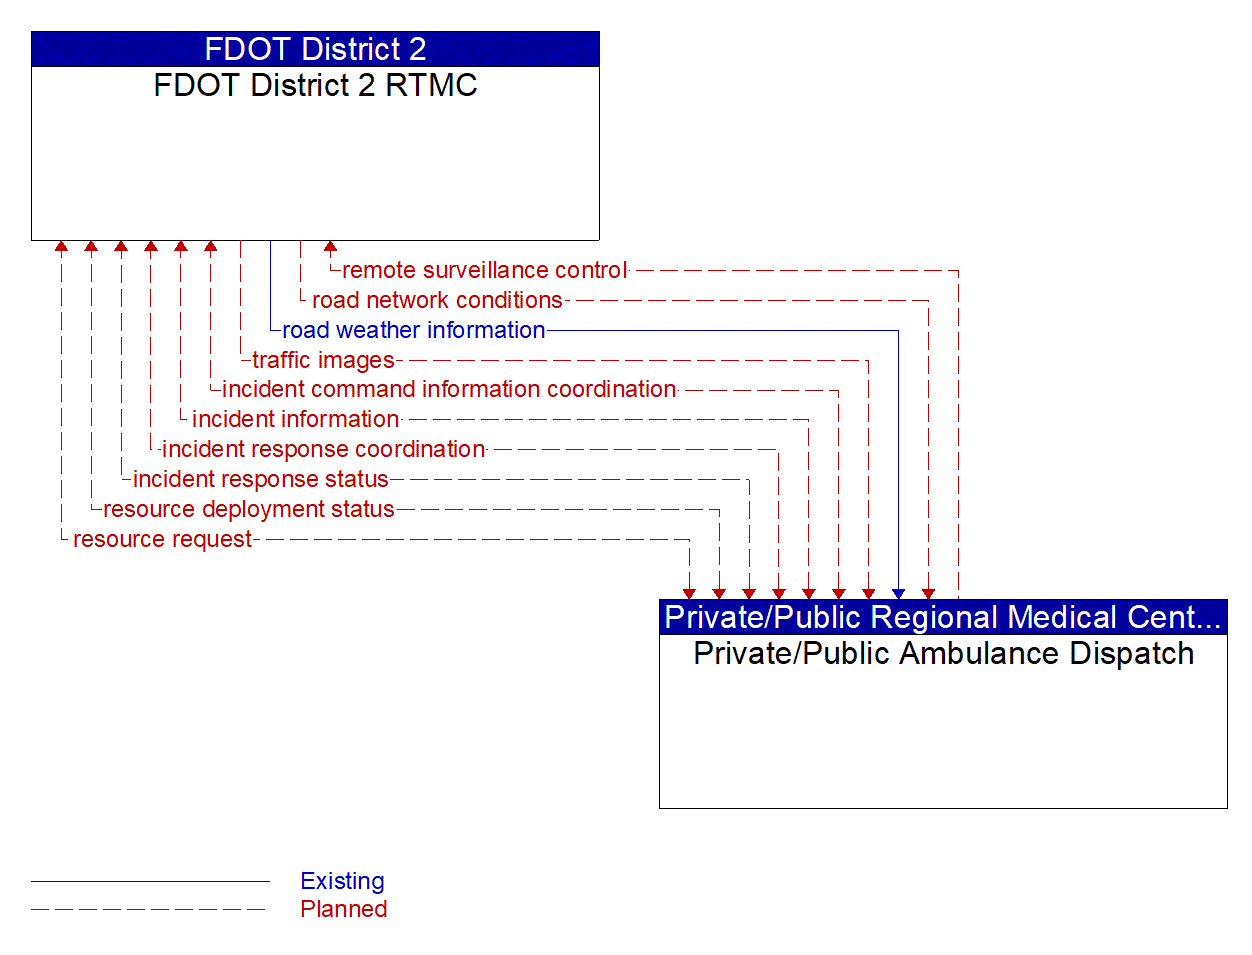 Architecture Flow Diagram: Private/Public Ambulance Dispatch <--> FDOT District 2 RTMC